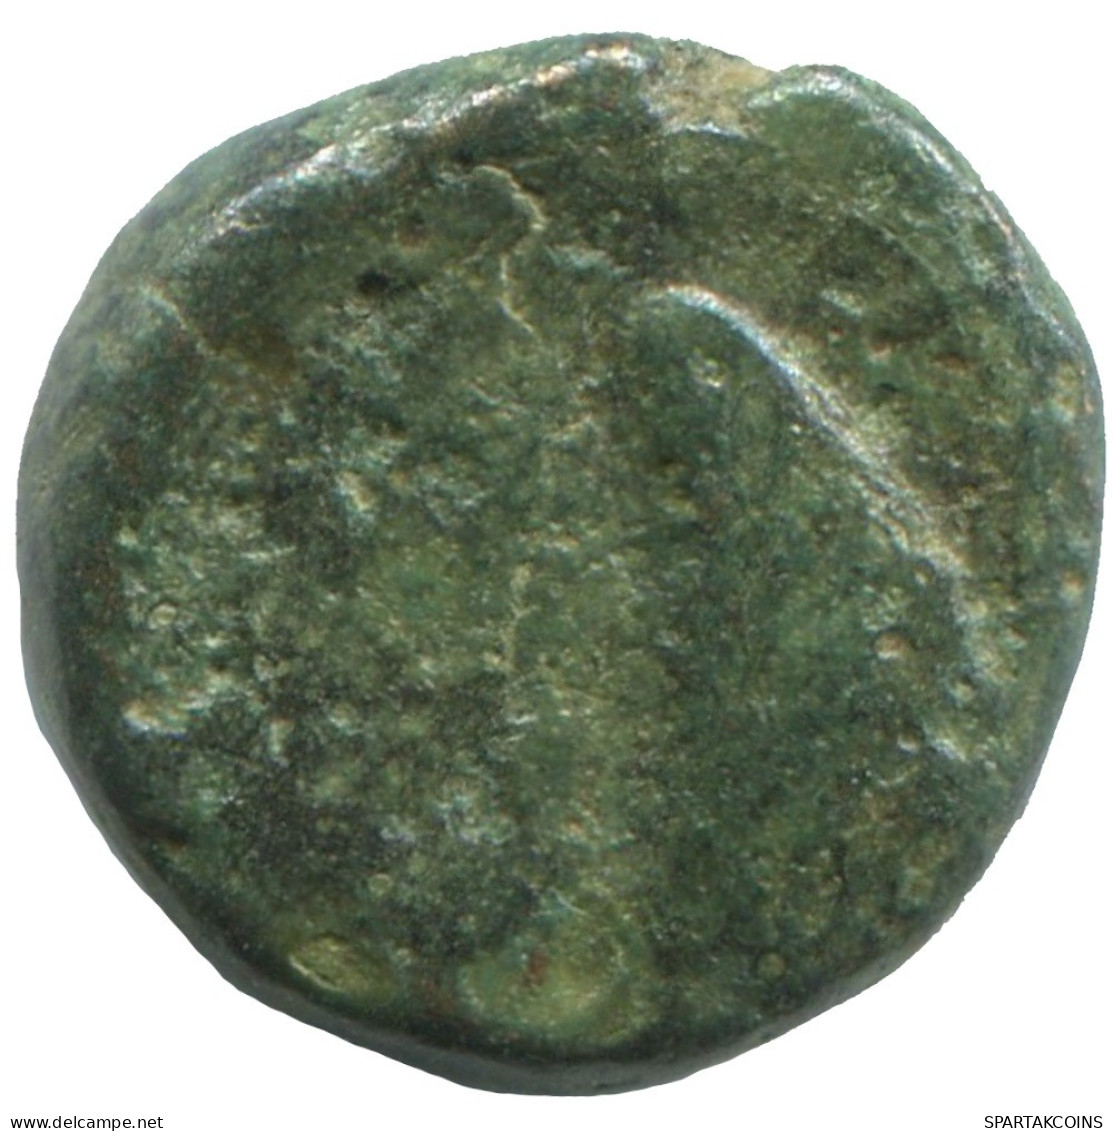 Ancient Antike Authentische Original GRIECHISCHE Münze 1.8g/12mm #SAV1309.11.D.A - Griechische Münzen